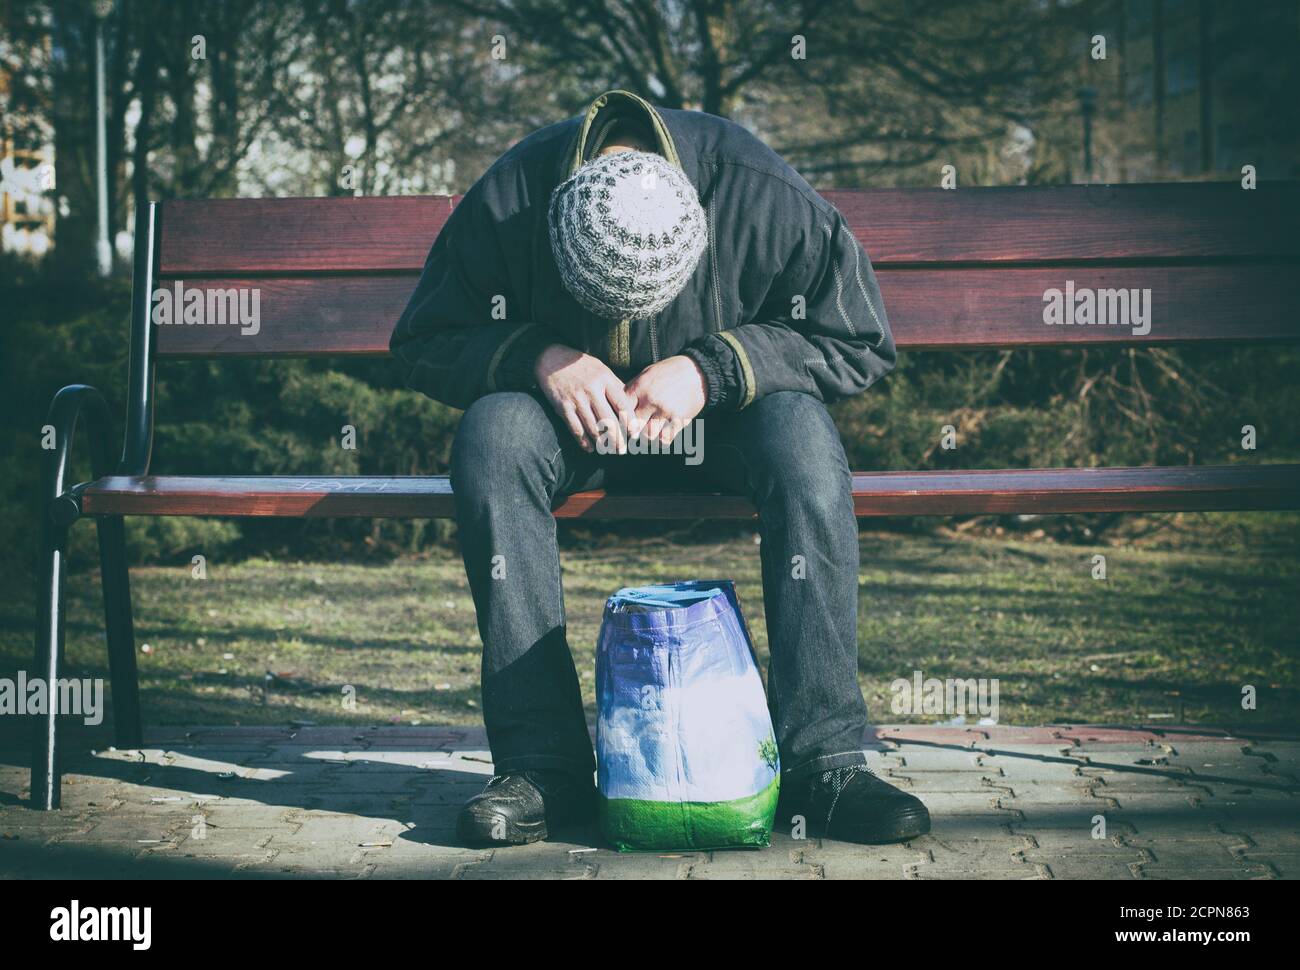 Déprimé et désespéré - un homme assis seul après la drogue et l'alcool sur un banc en bois. Banque D'Images